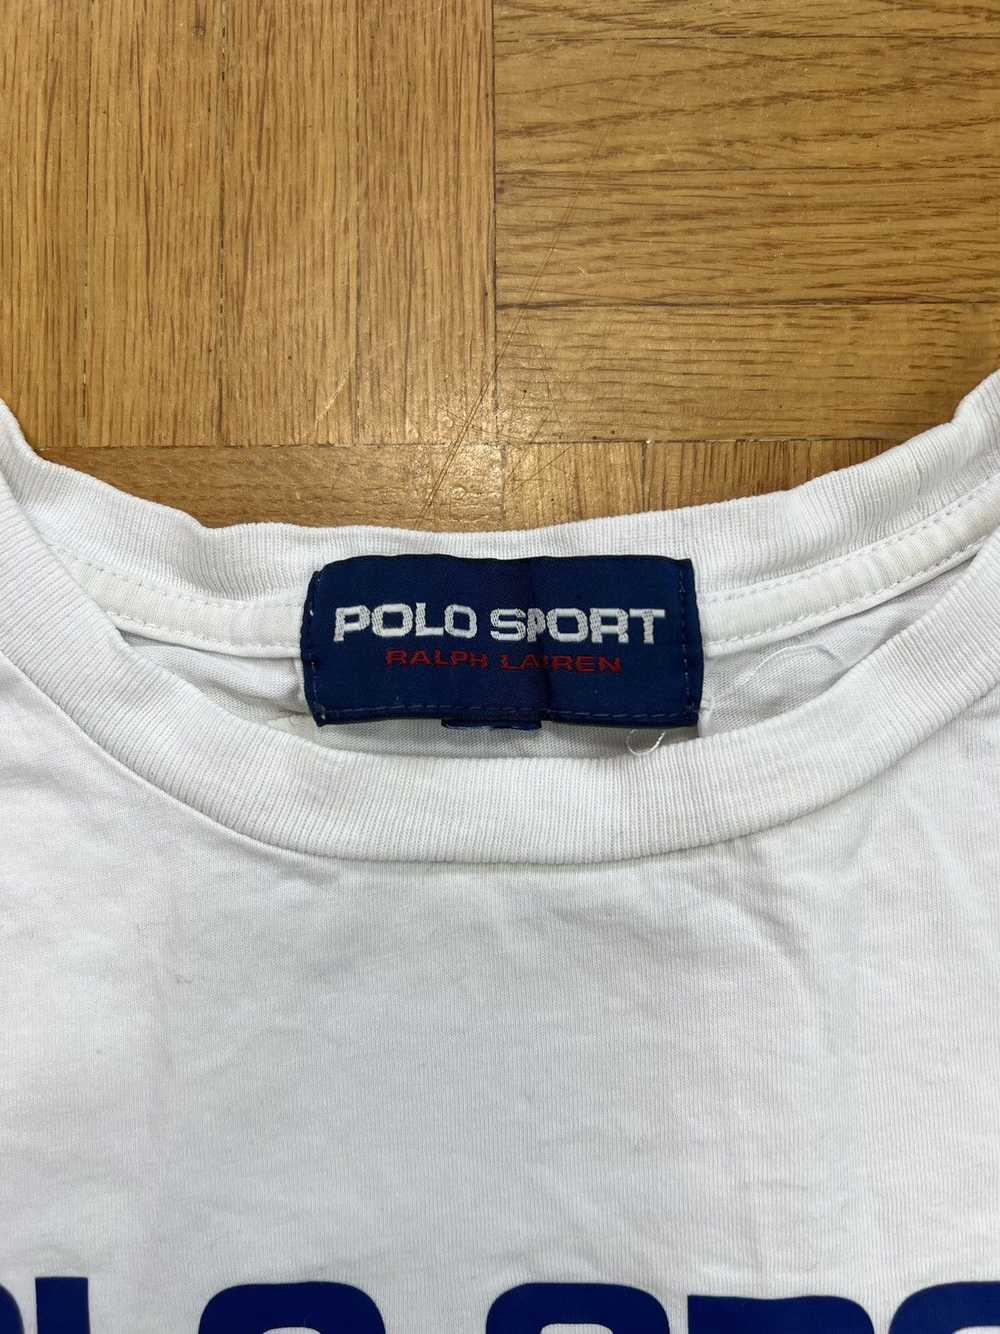 Ralph Lauren Tshirt Polo Sport Ralph Lauren big l… - image 3